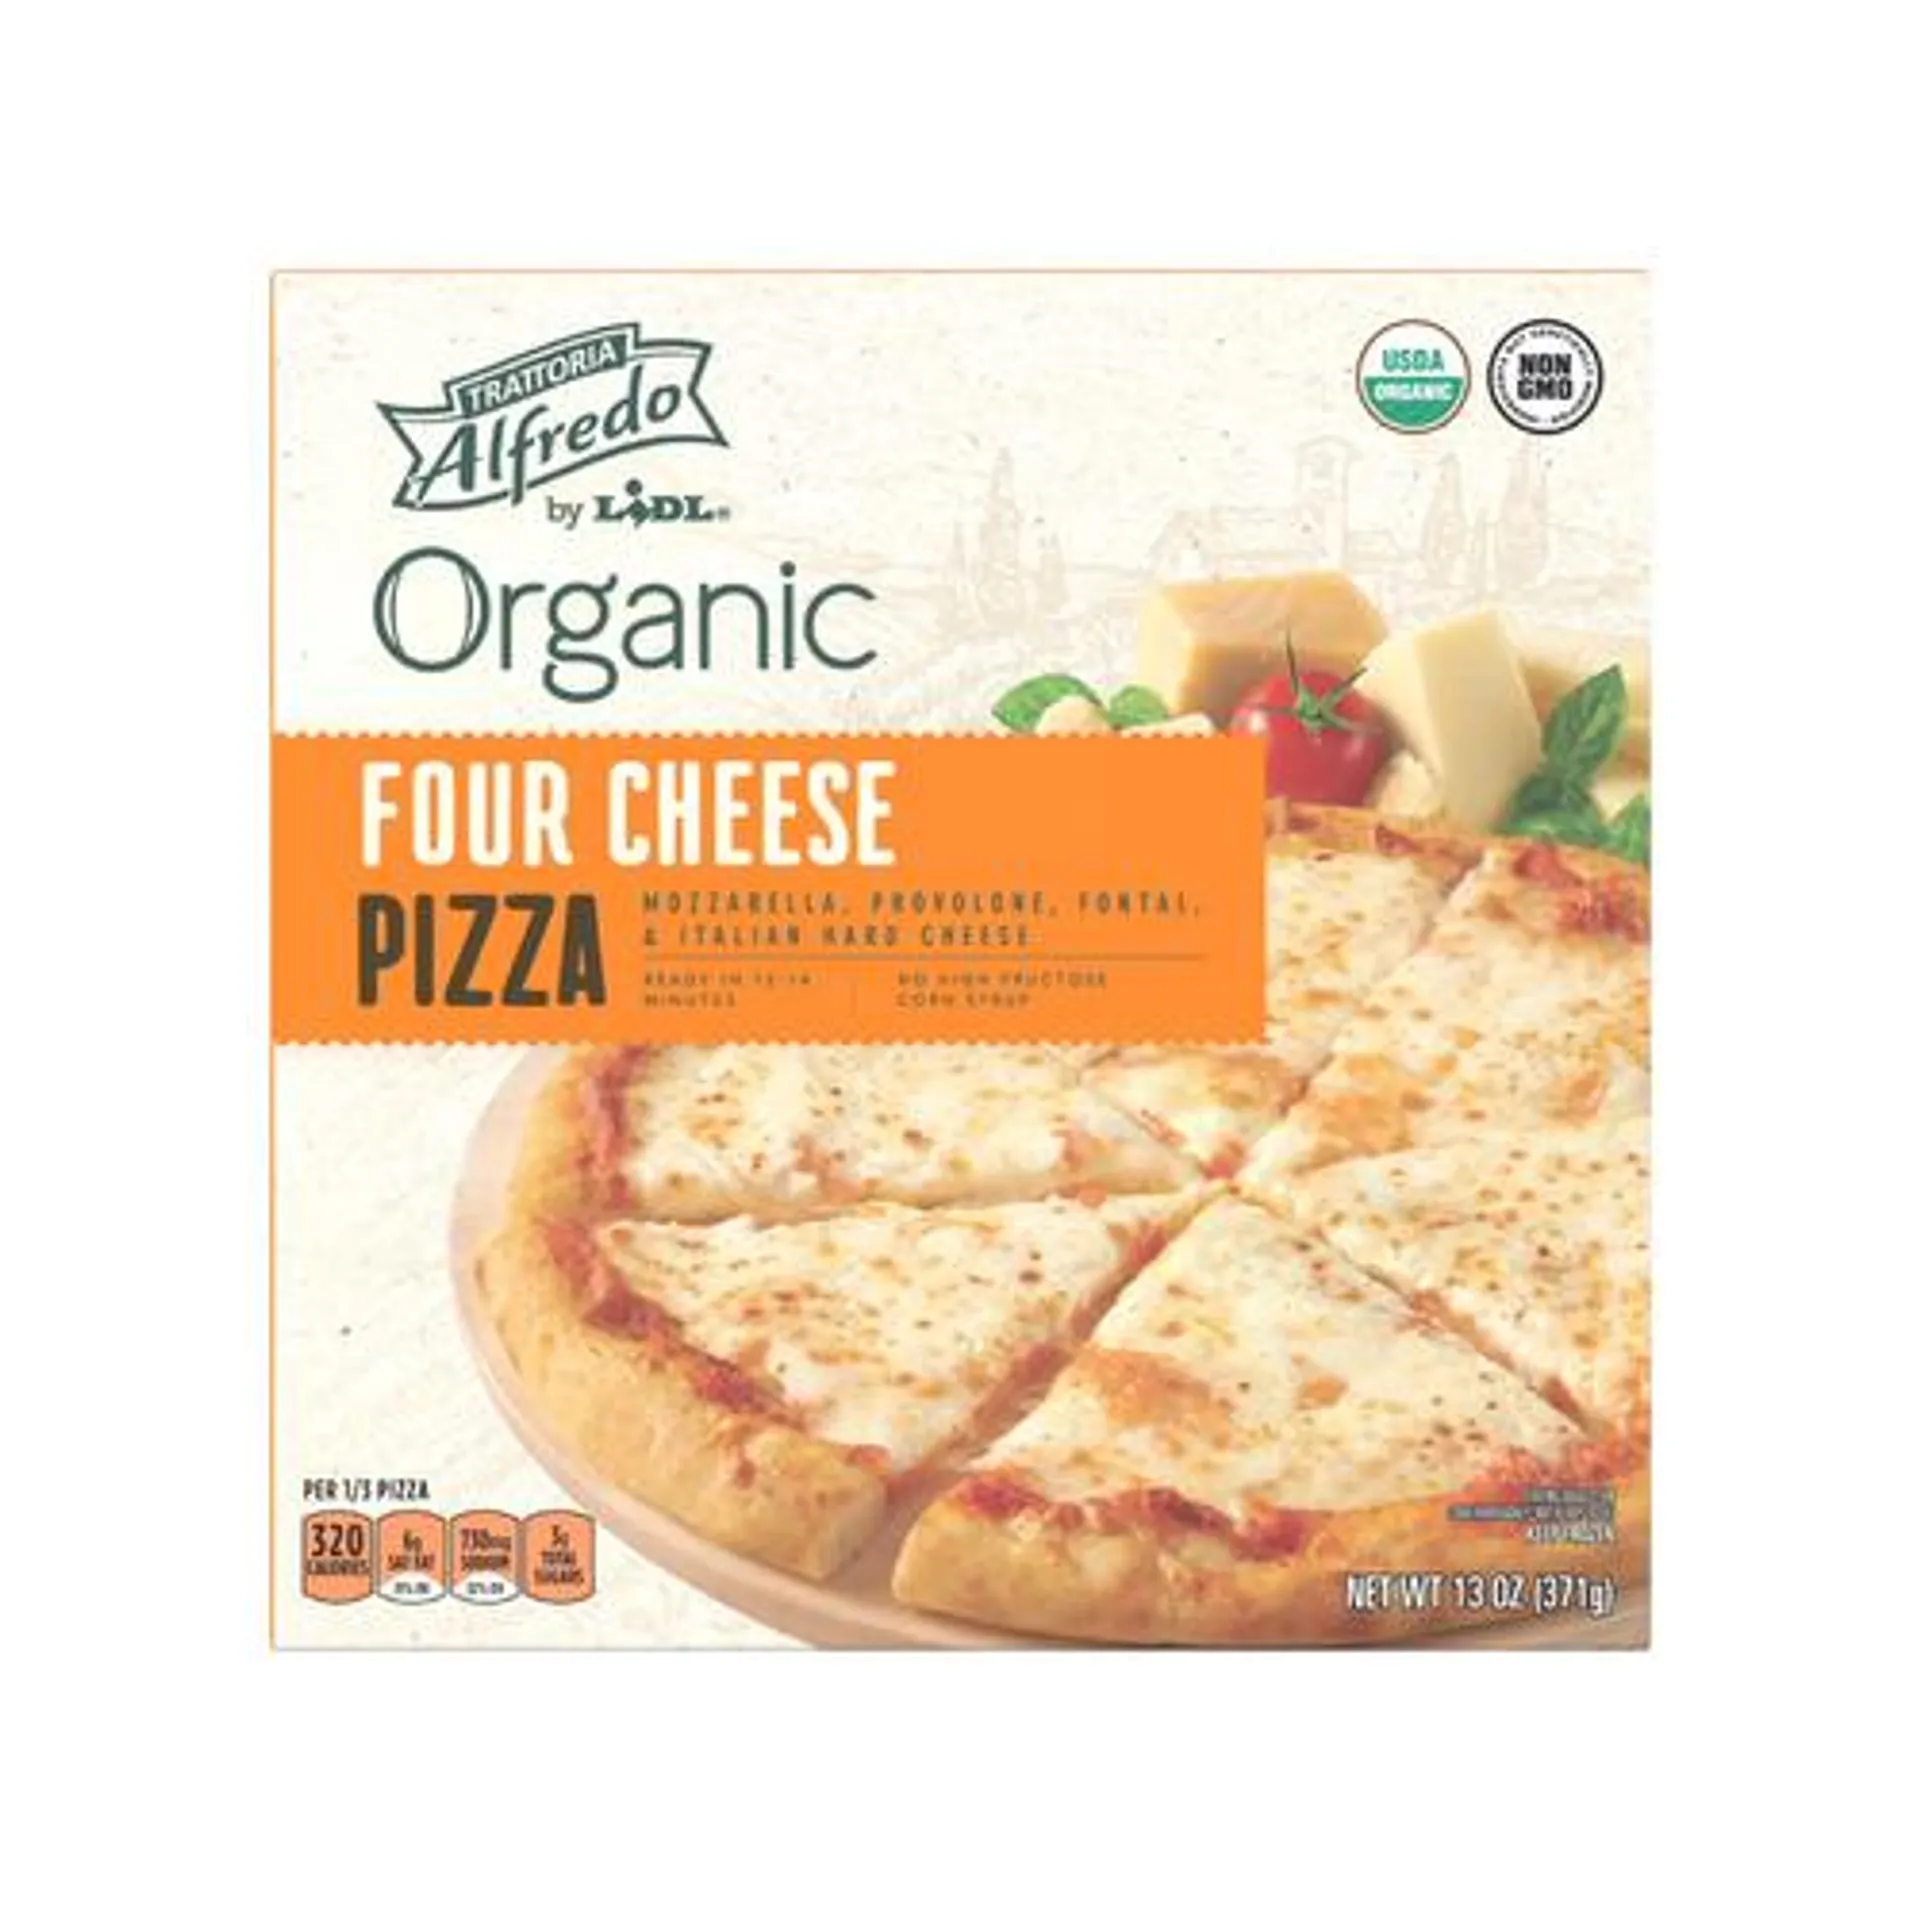 Trattoria Alfredo frozen organic pizza, four cheese